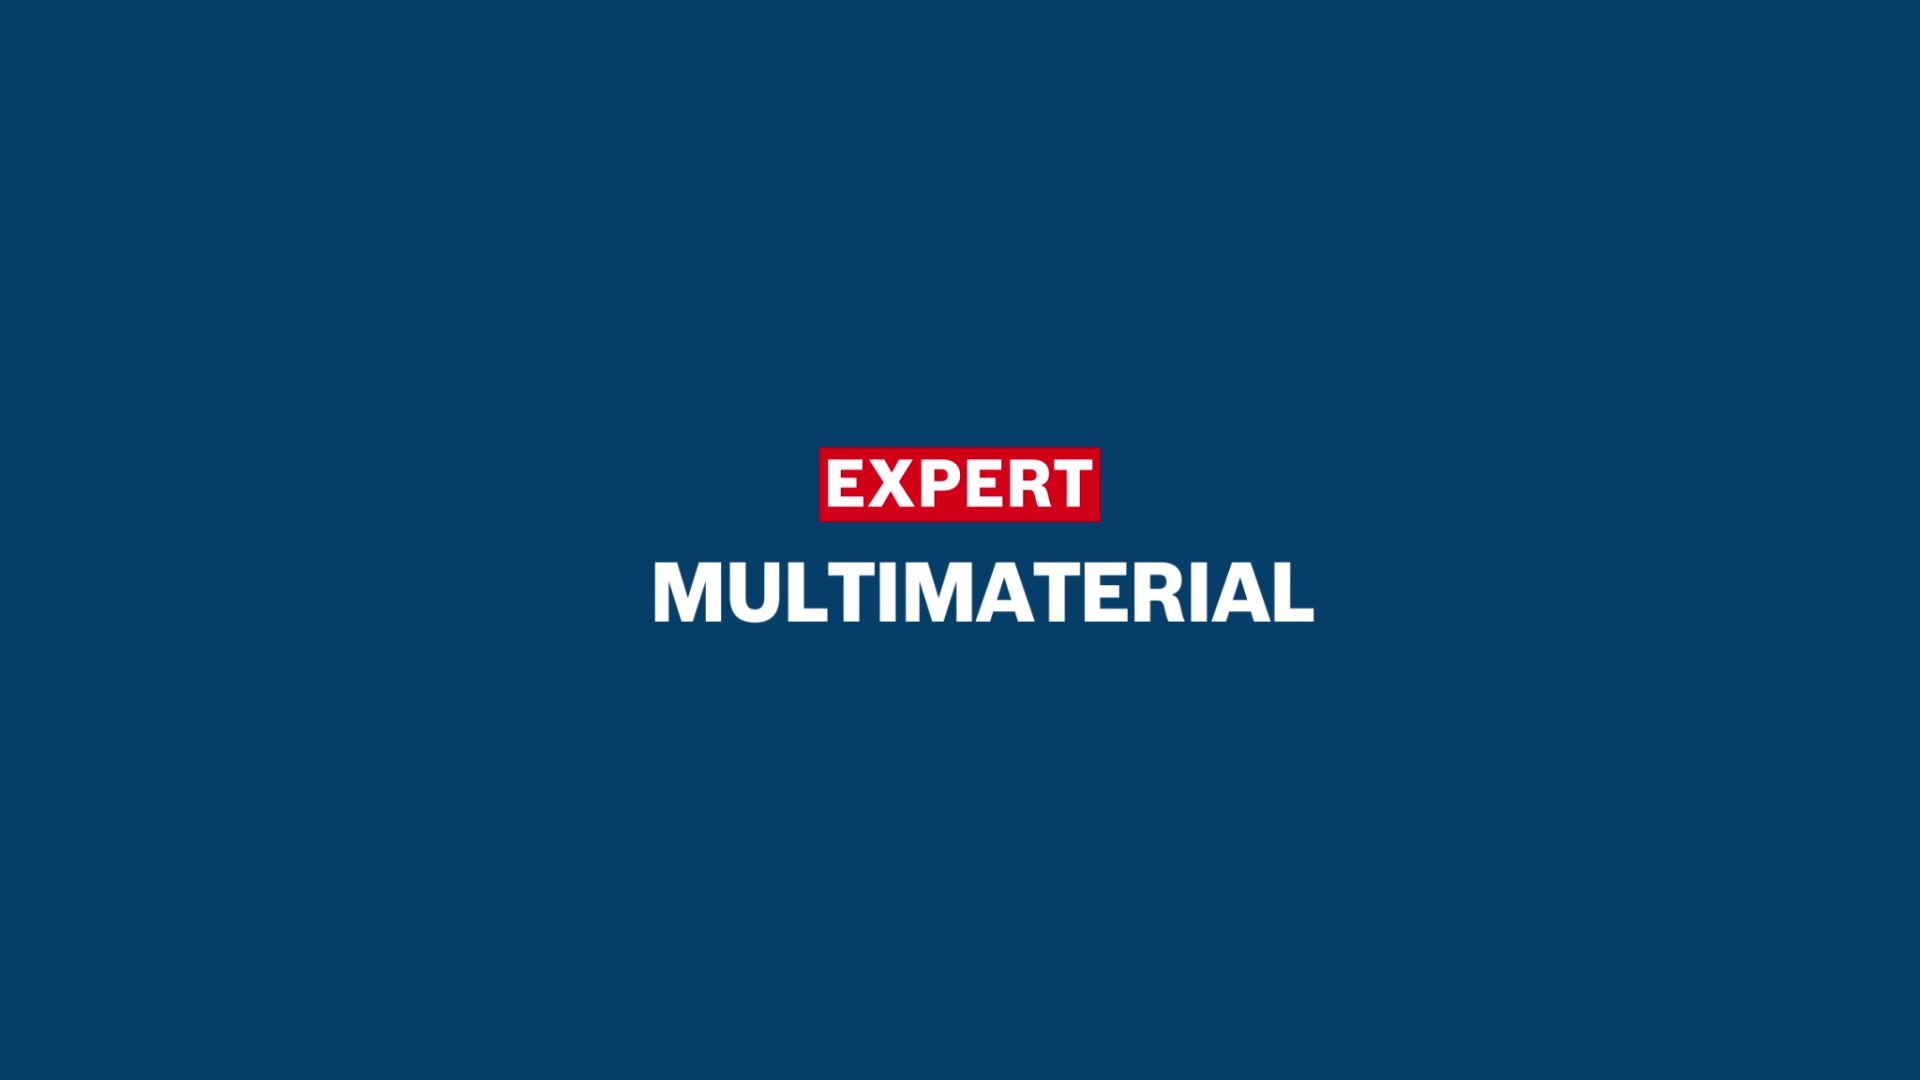 EXPERT Multi Material